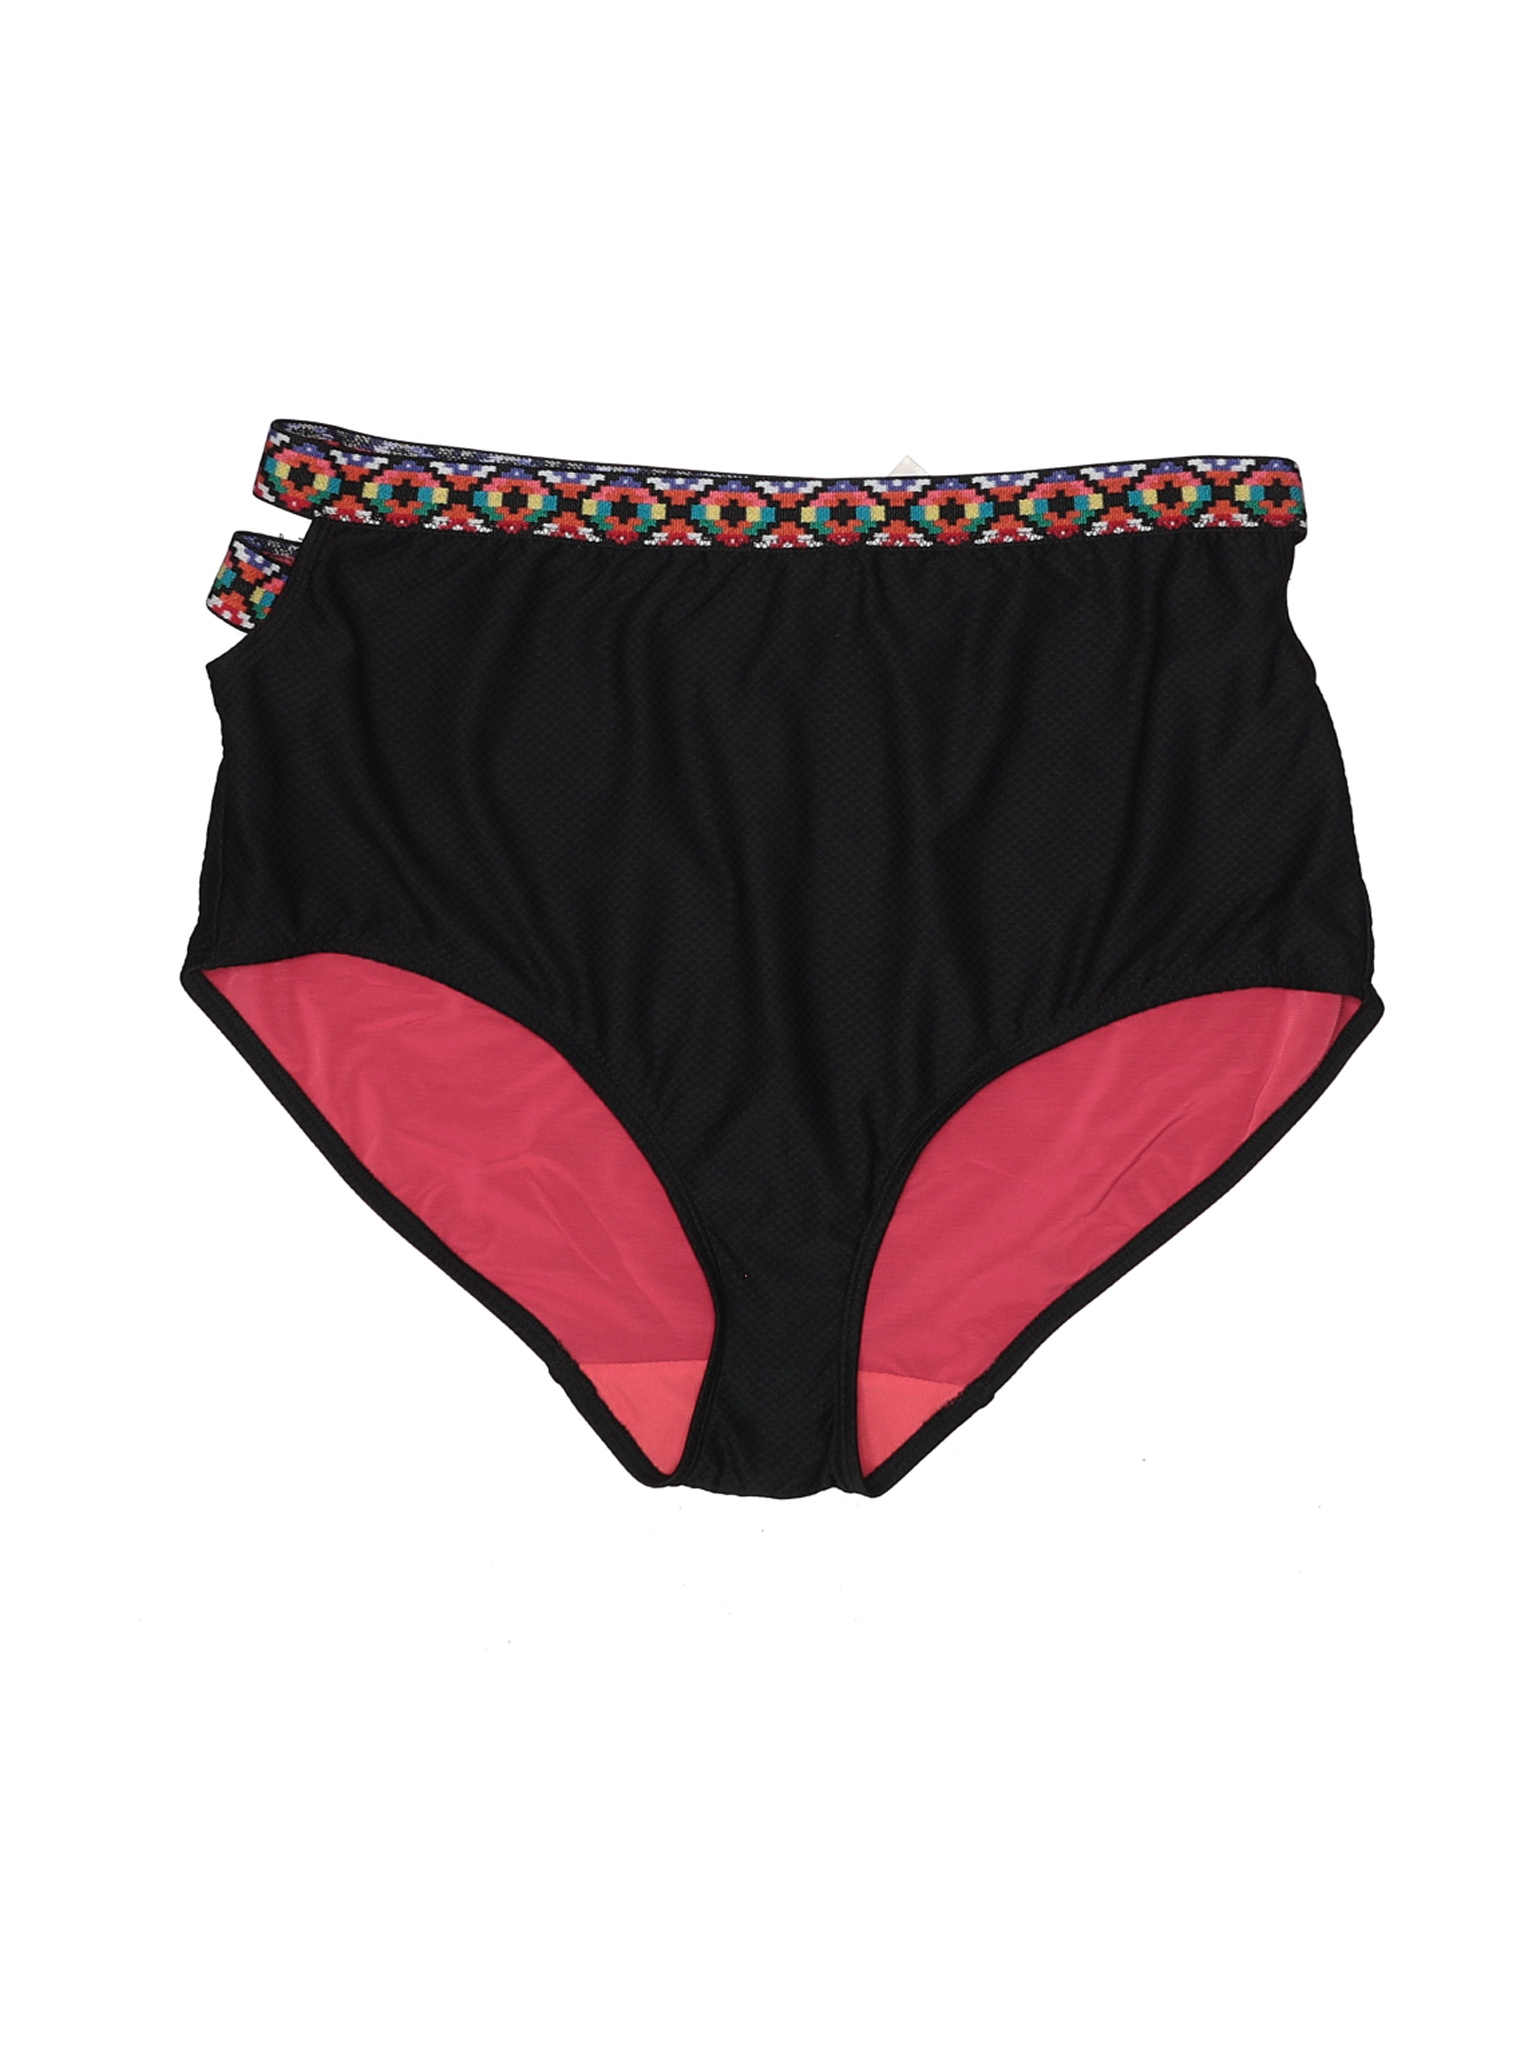 Swim by Cacique Women Black Swimsuit Bottoms 26 Plus | eBay